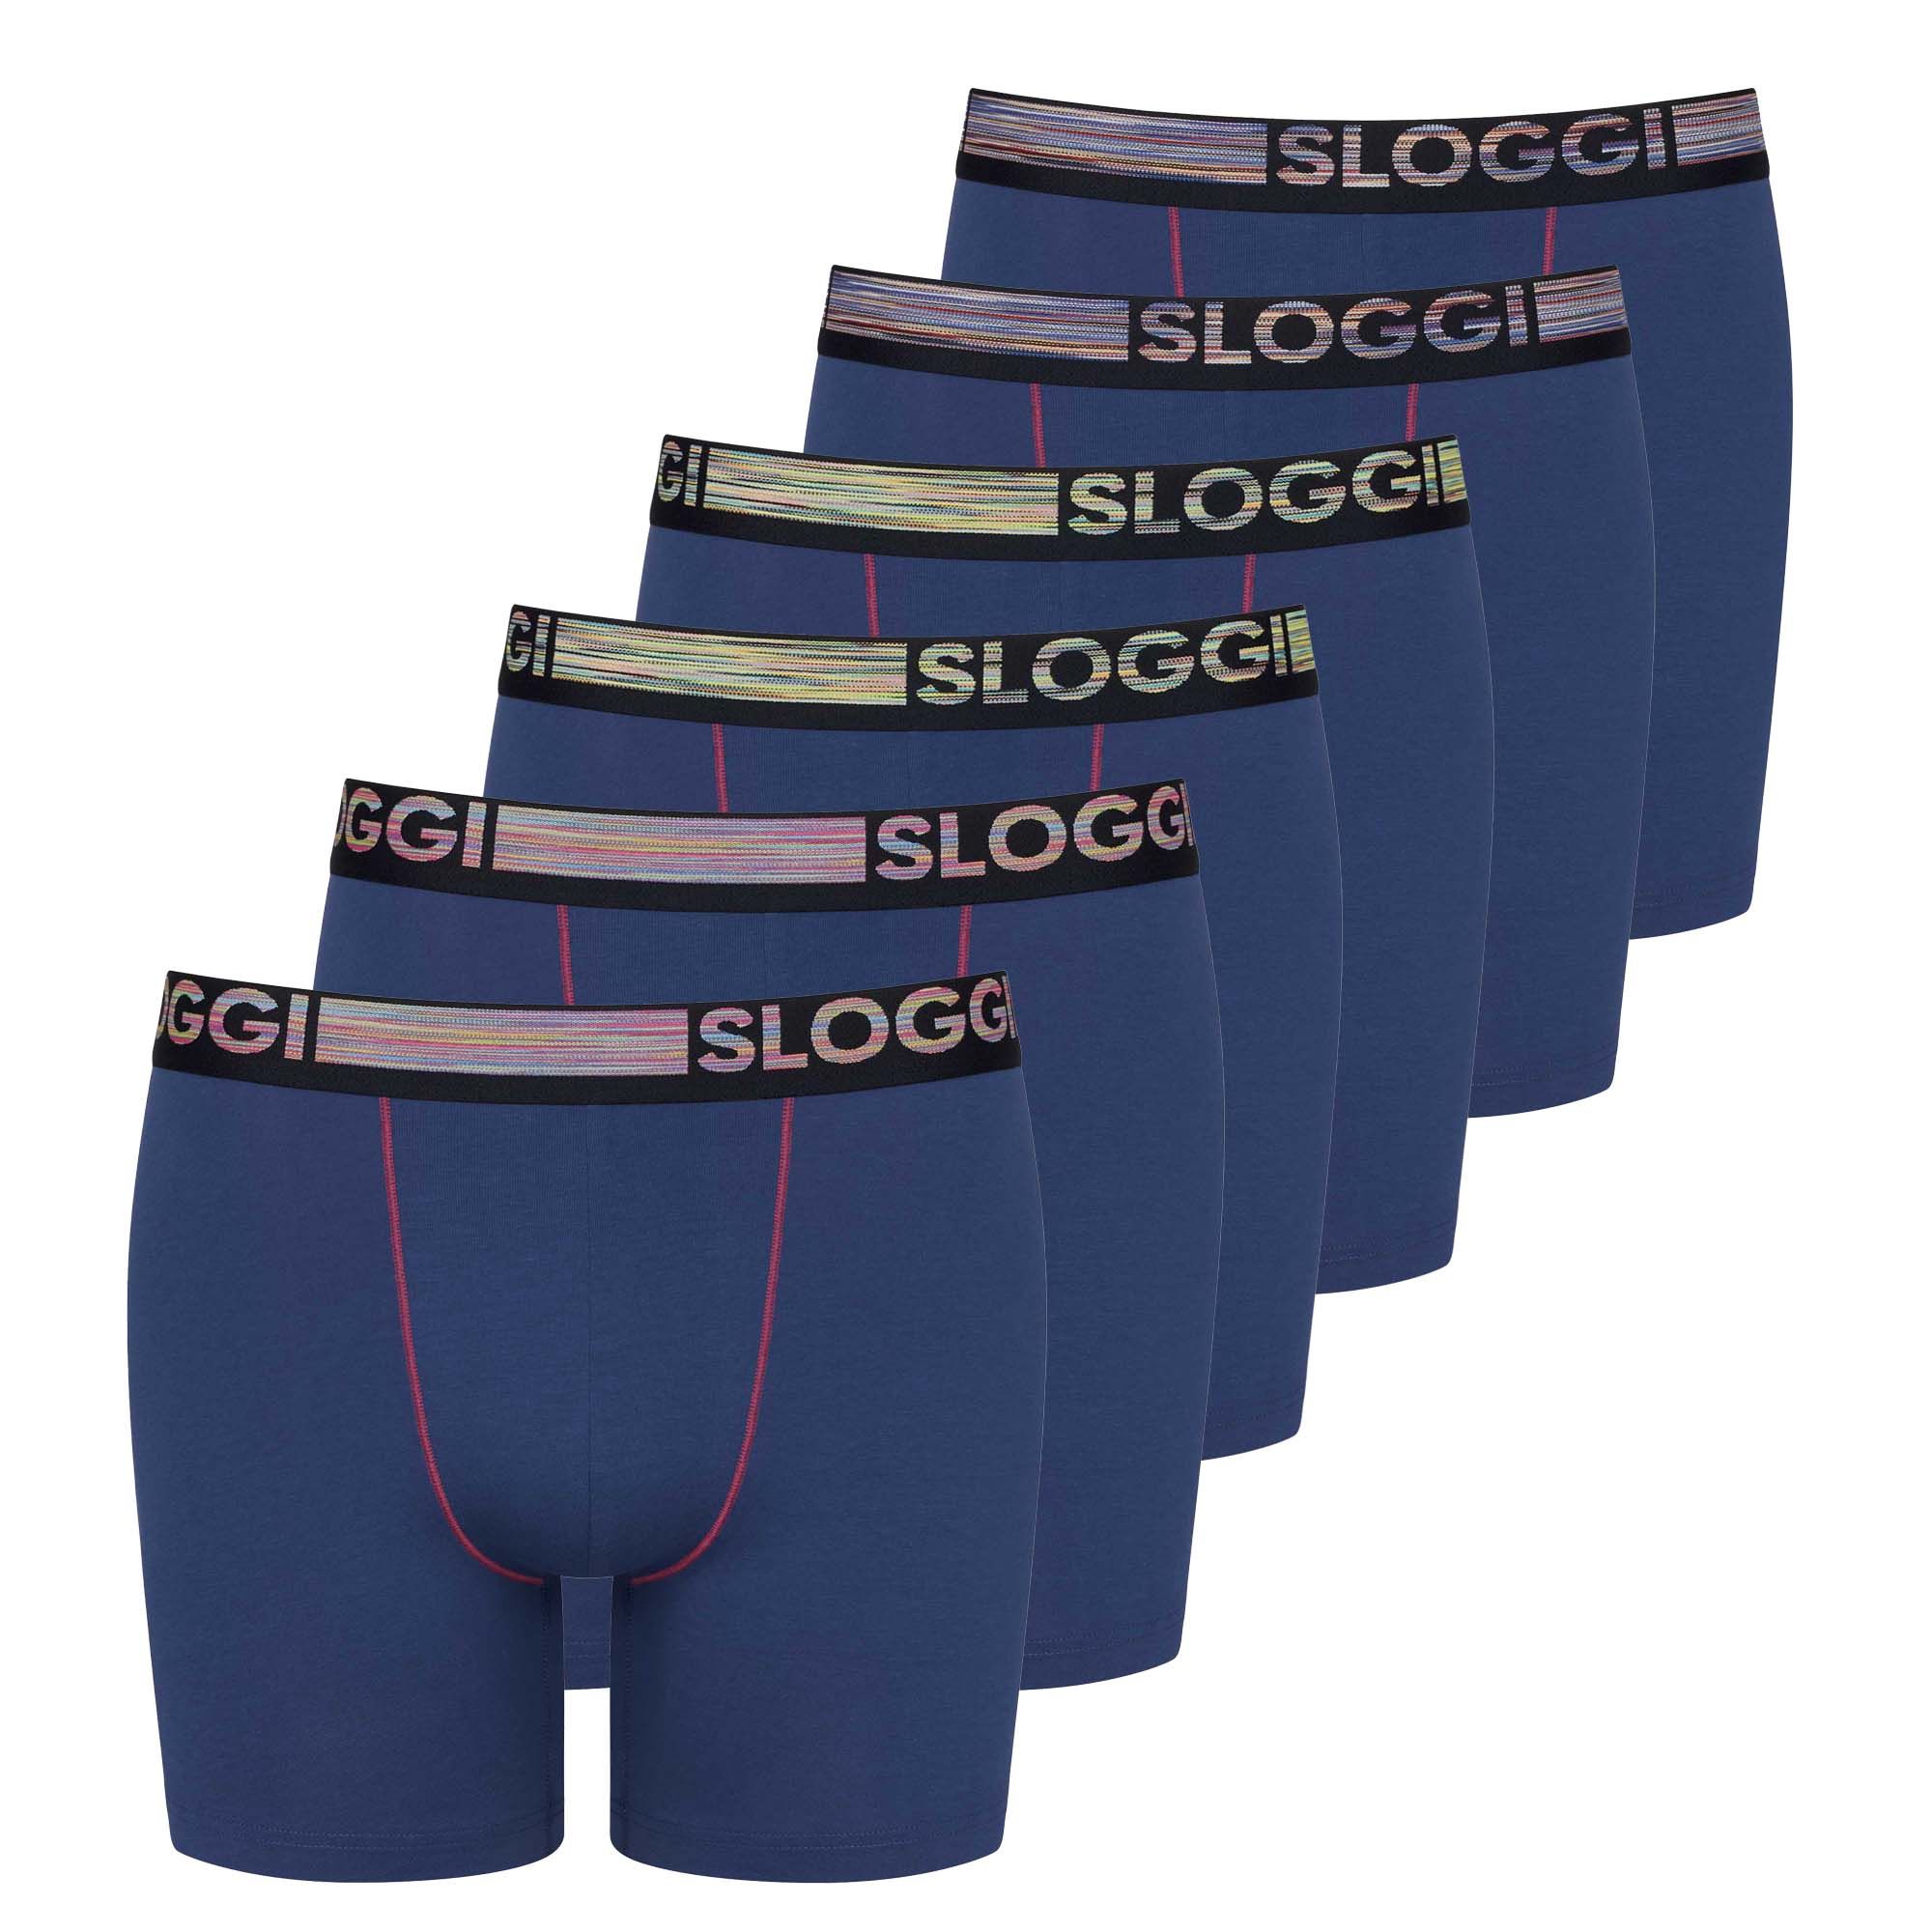 Sloggi Boxer Long Homme, Lot De 6 - Go Abc Natural H Short, Coton Biologique Bleu L (Large)